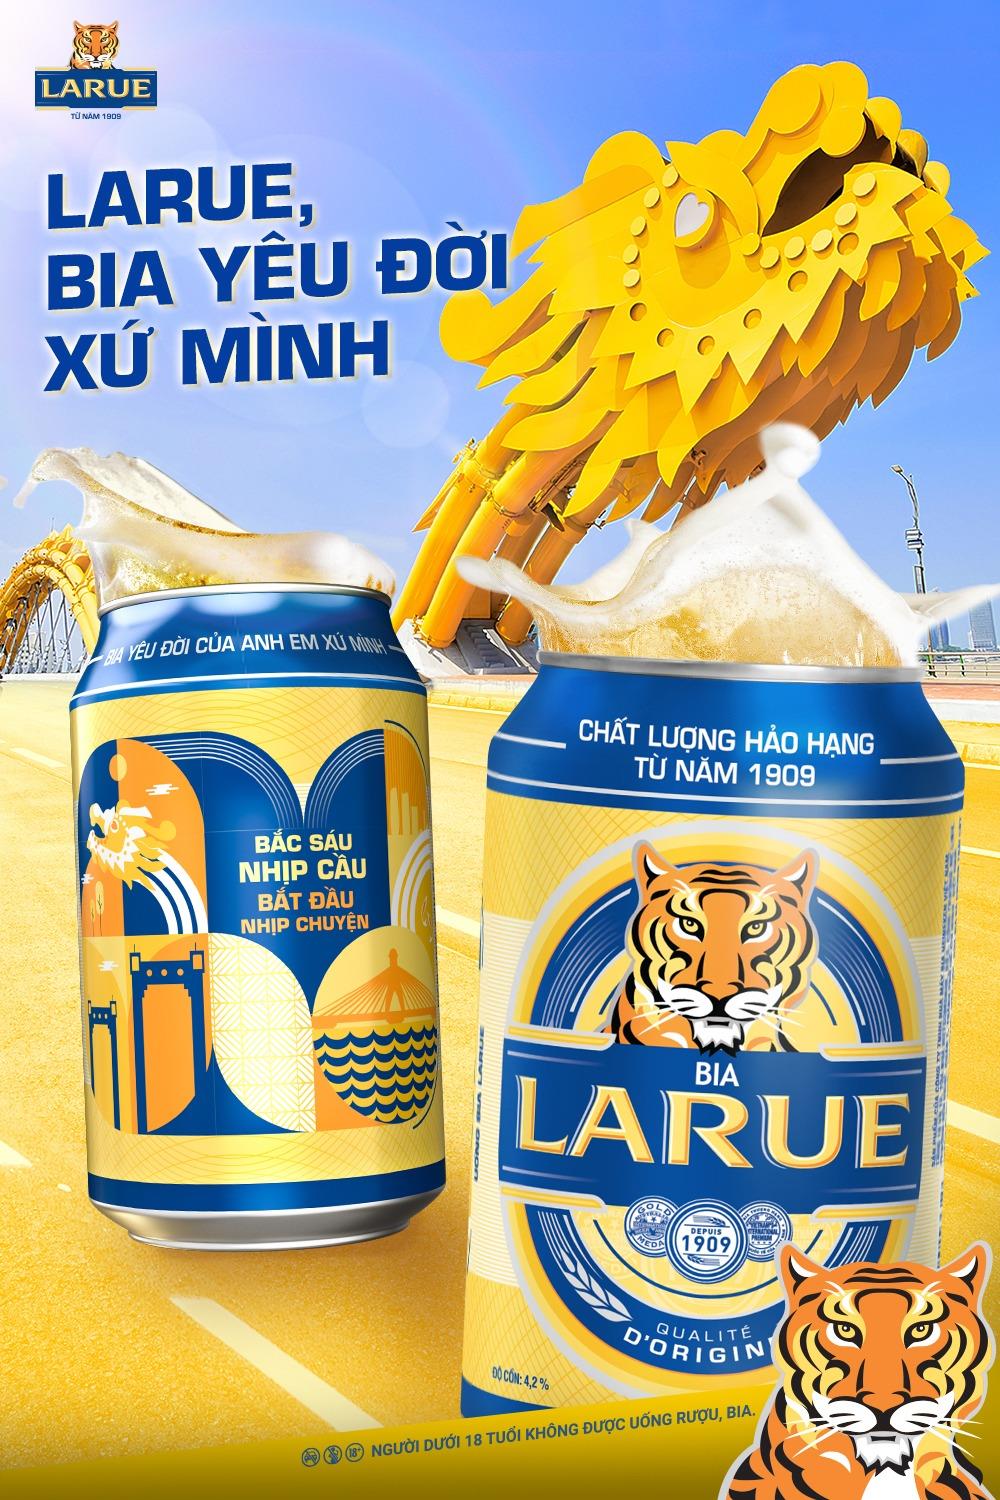 Khoe quê như anh em Đà Nẵng, Quảng Nam cùng bộ sưu tập lon phiên bản giới hạn của bia Larue - Ảnh 2.